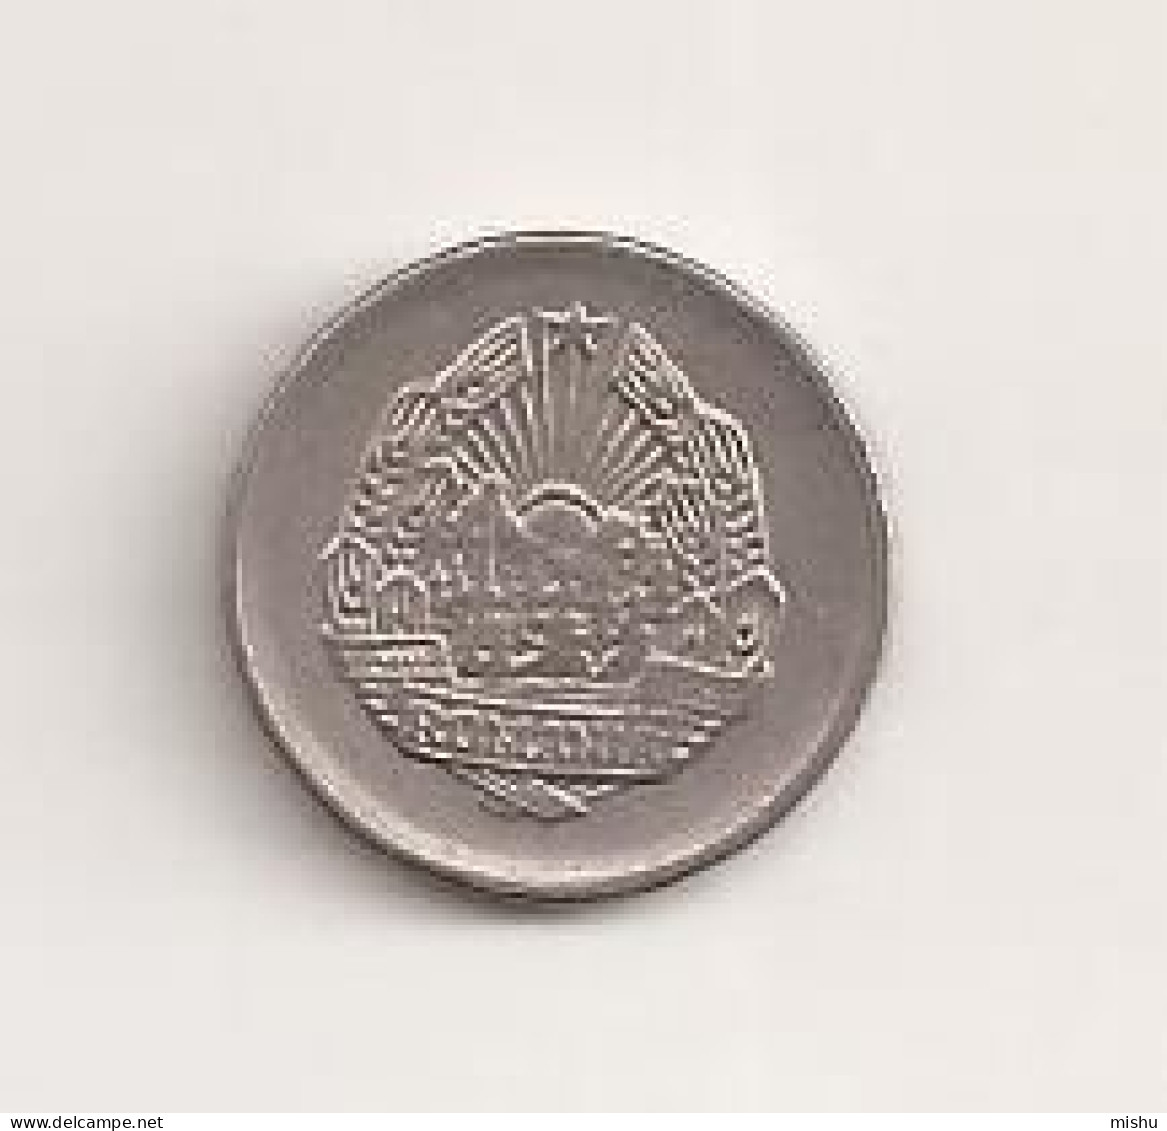 Coin - Romania - 5 Bani 1966 V7 - Roumanie